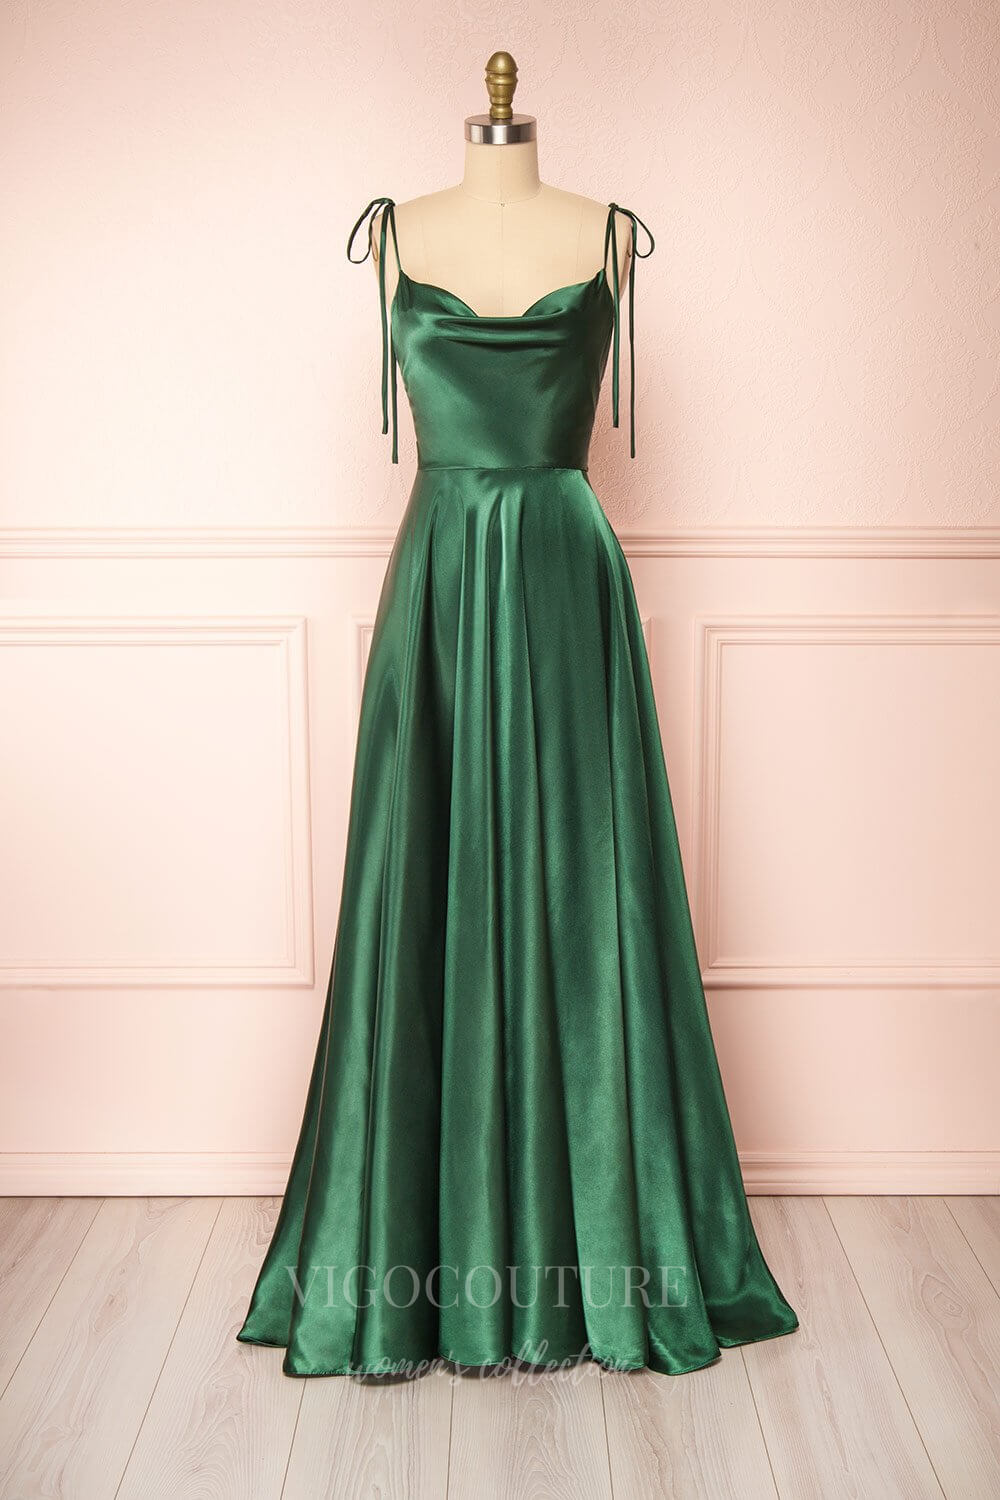 vigocouture-Sage Spaghetti Strap Prom Dress 20580-Prom Dresses-vigocouture-Green-US2-